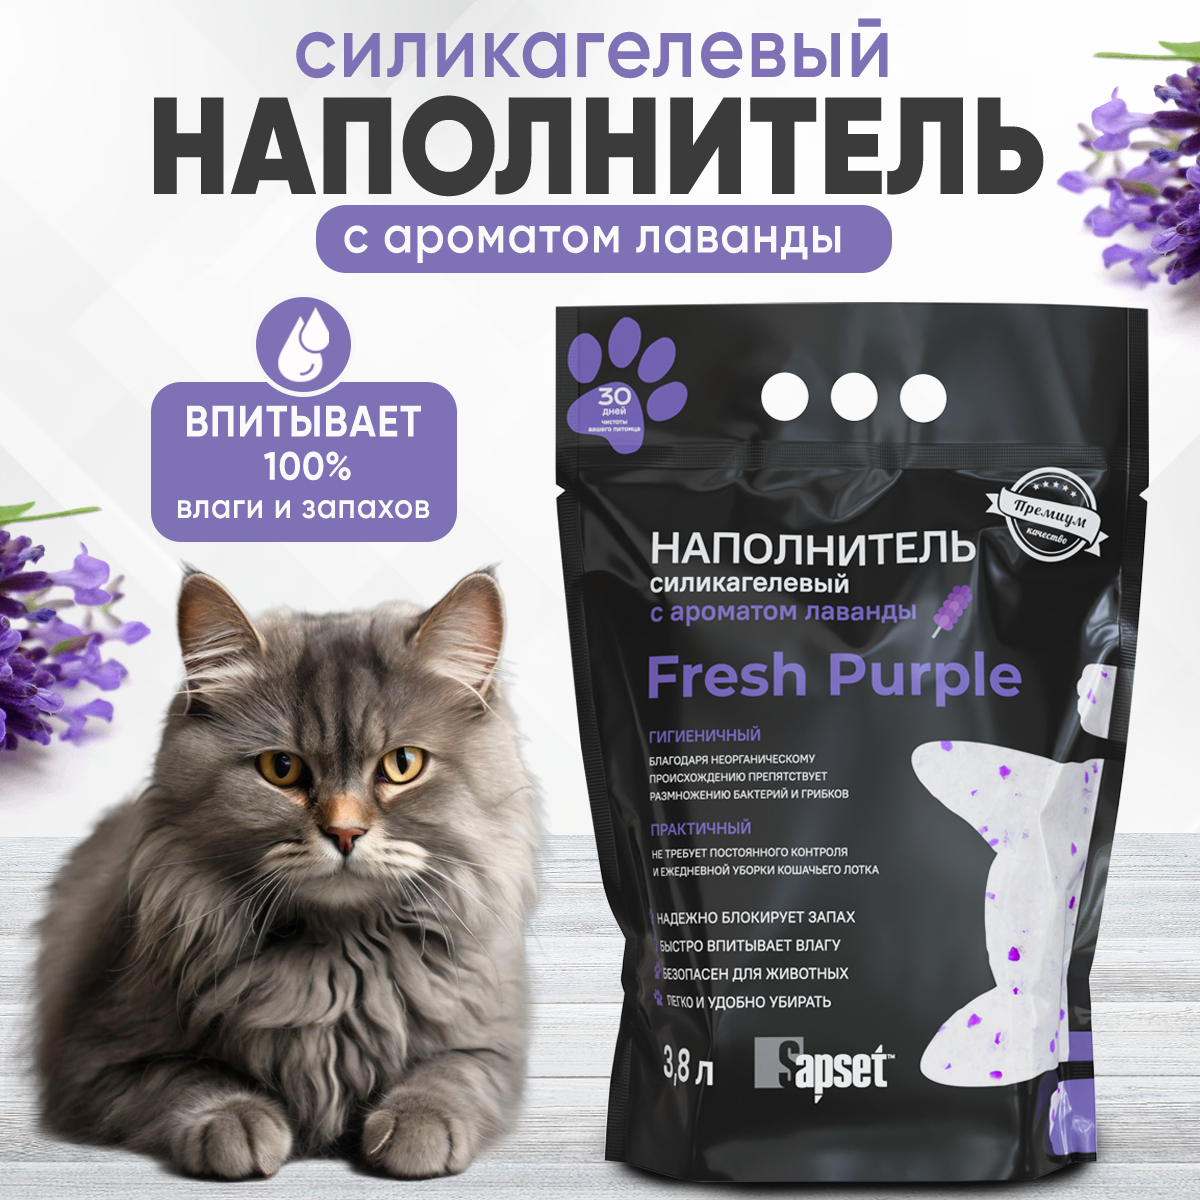 Наполнитель впитывающий силикагелевый для кошачьих туалетов Sapset Fresh purple с ароматом лаванды, 3.8 л